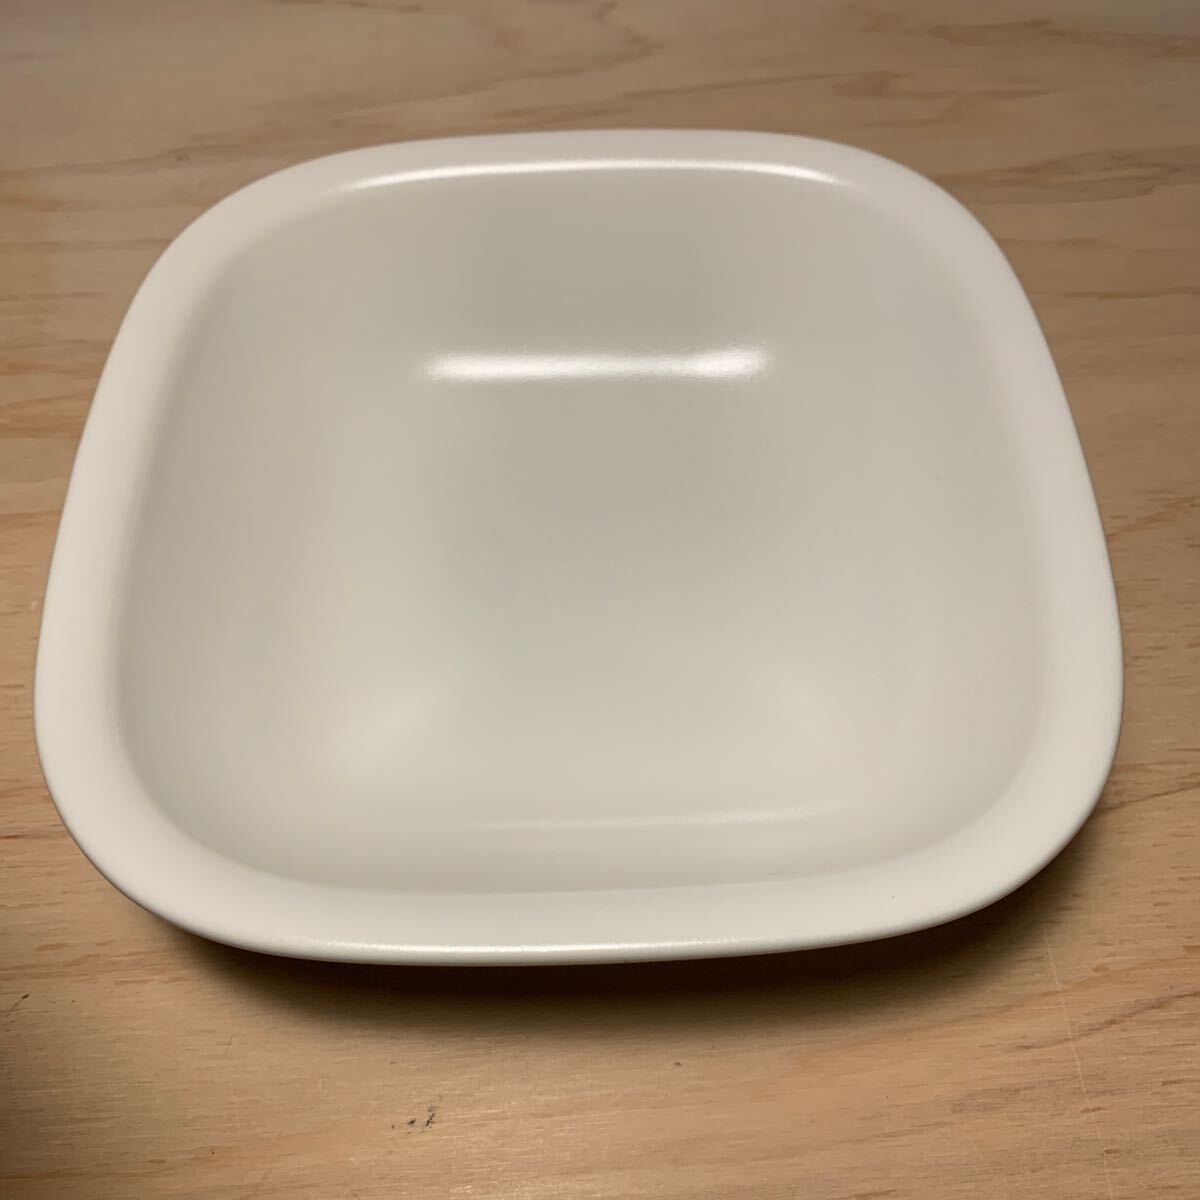 未使用 柳宗理 セラミックボウル 2個セット 白 白黒の食器シリーズ スクエア型 皿 ボウルの画像3